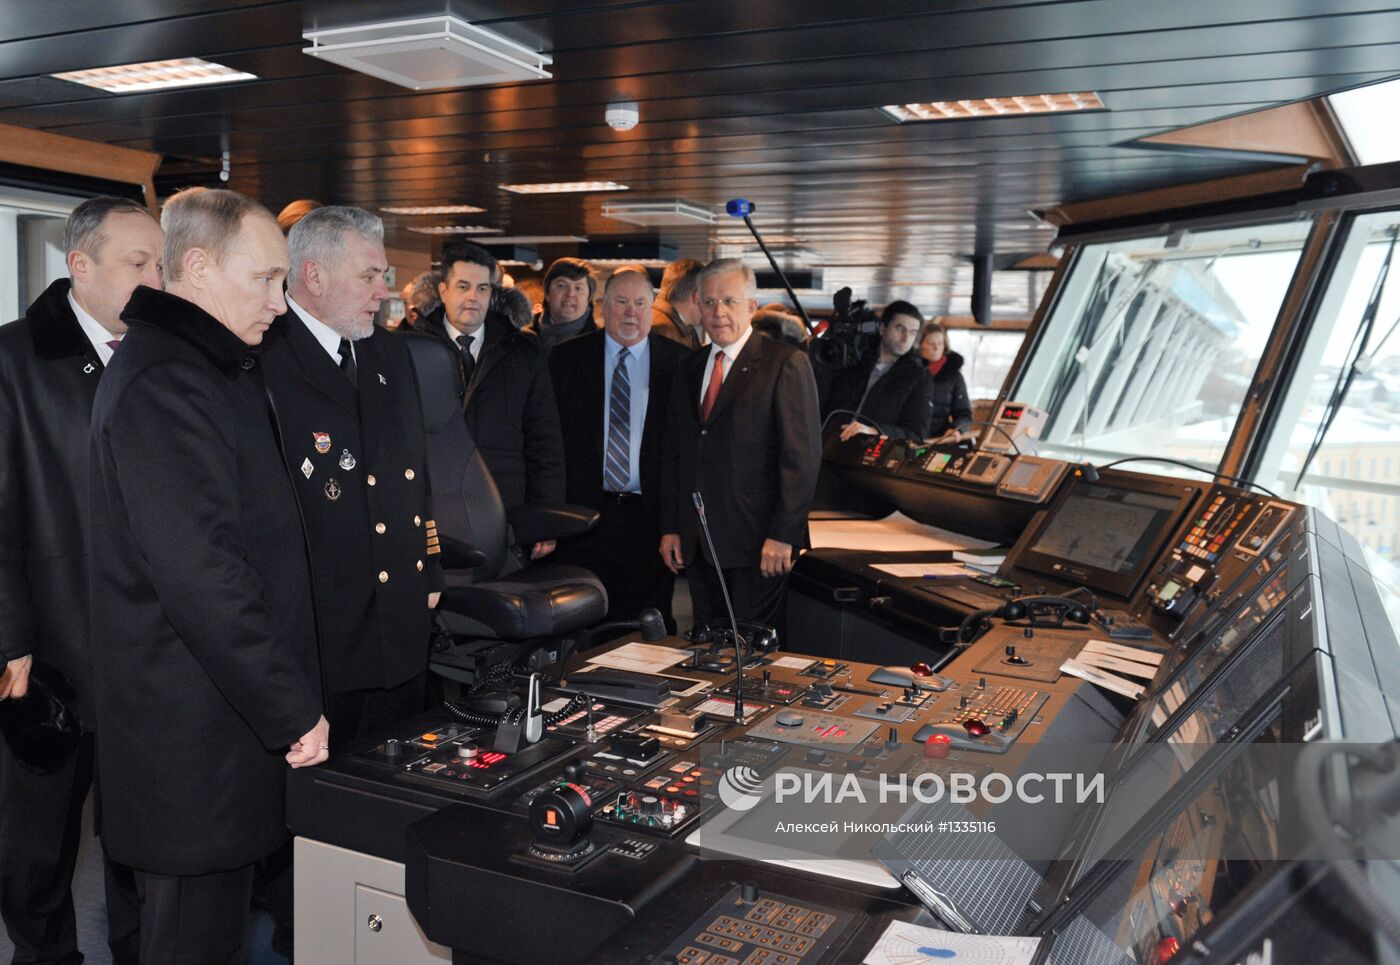 В.Путин на церемонии имянаречения судна "Витус Беринг"